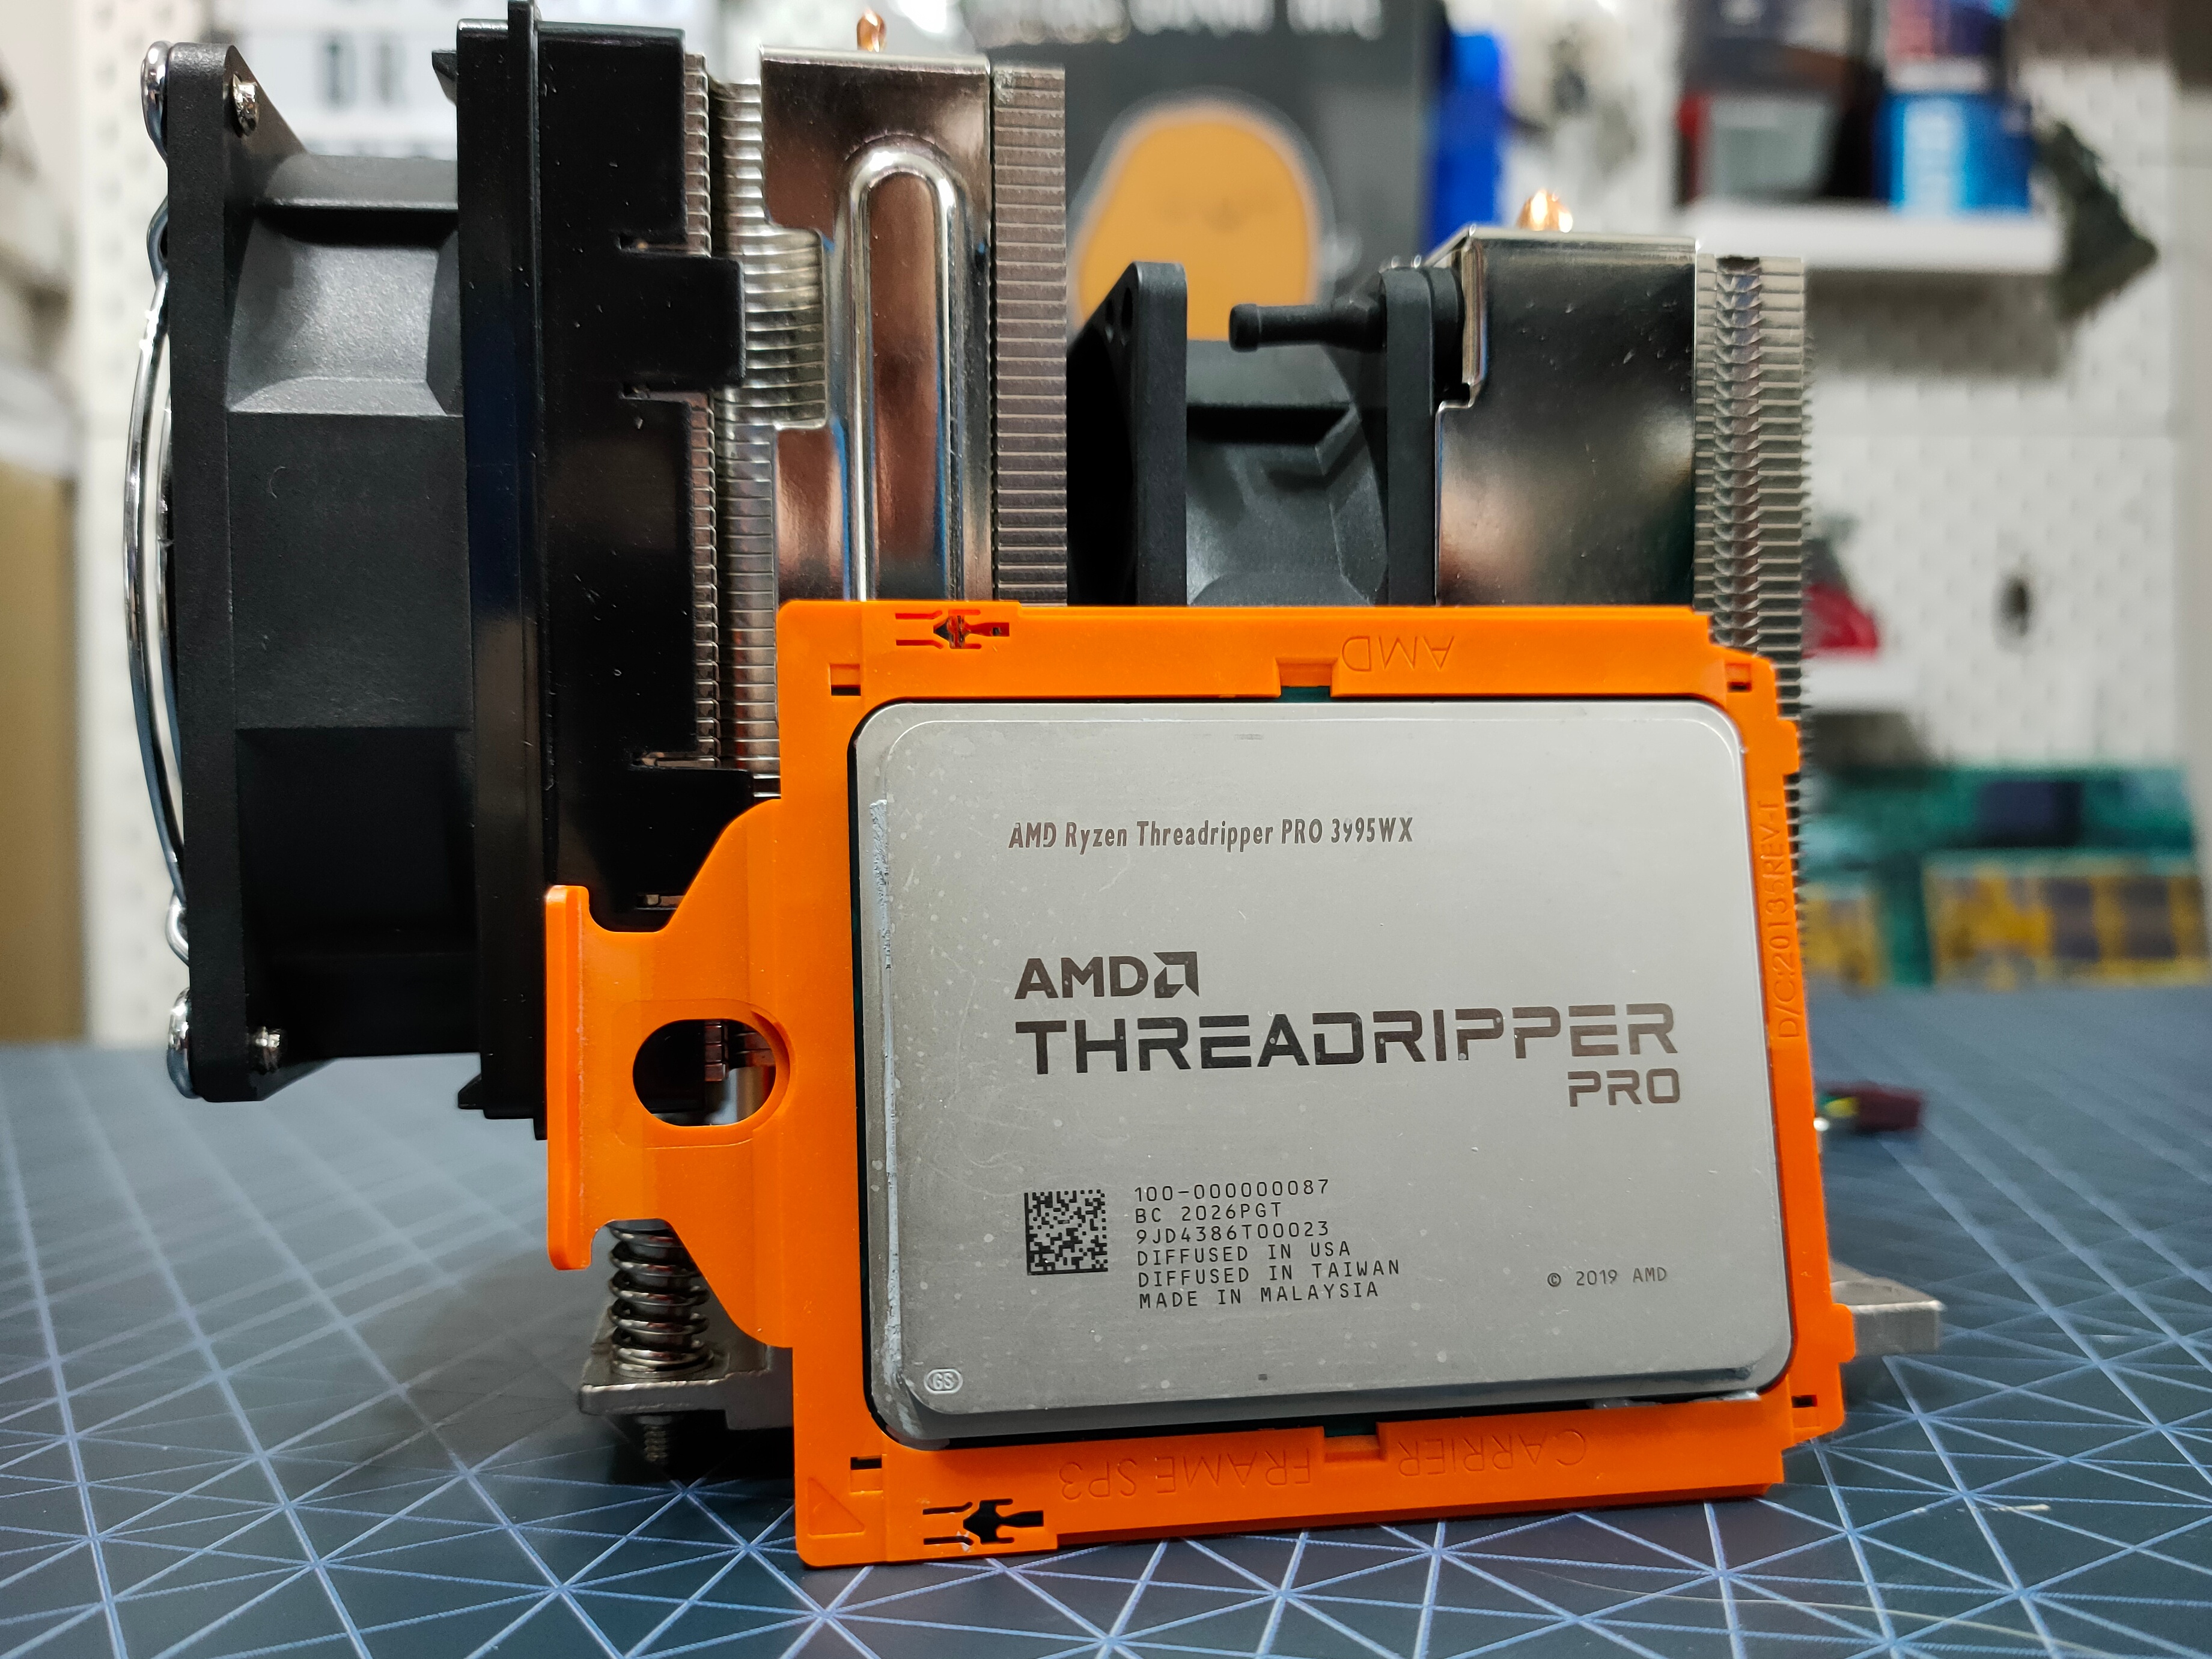 AMD Threadripper Pro Review: An Upgrade Over Regular Threadripper?